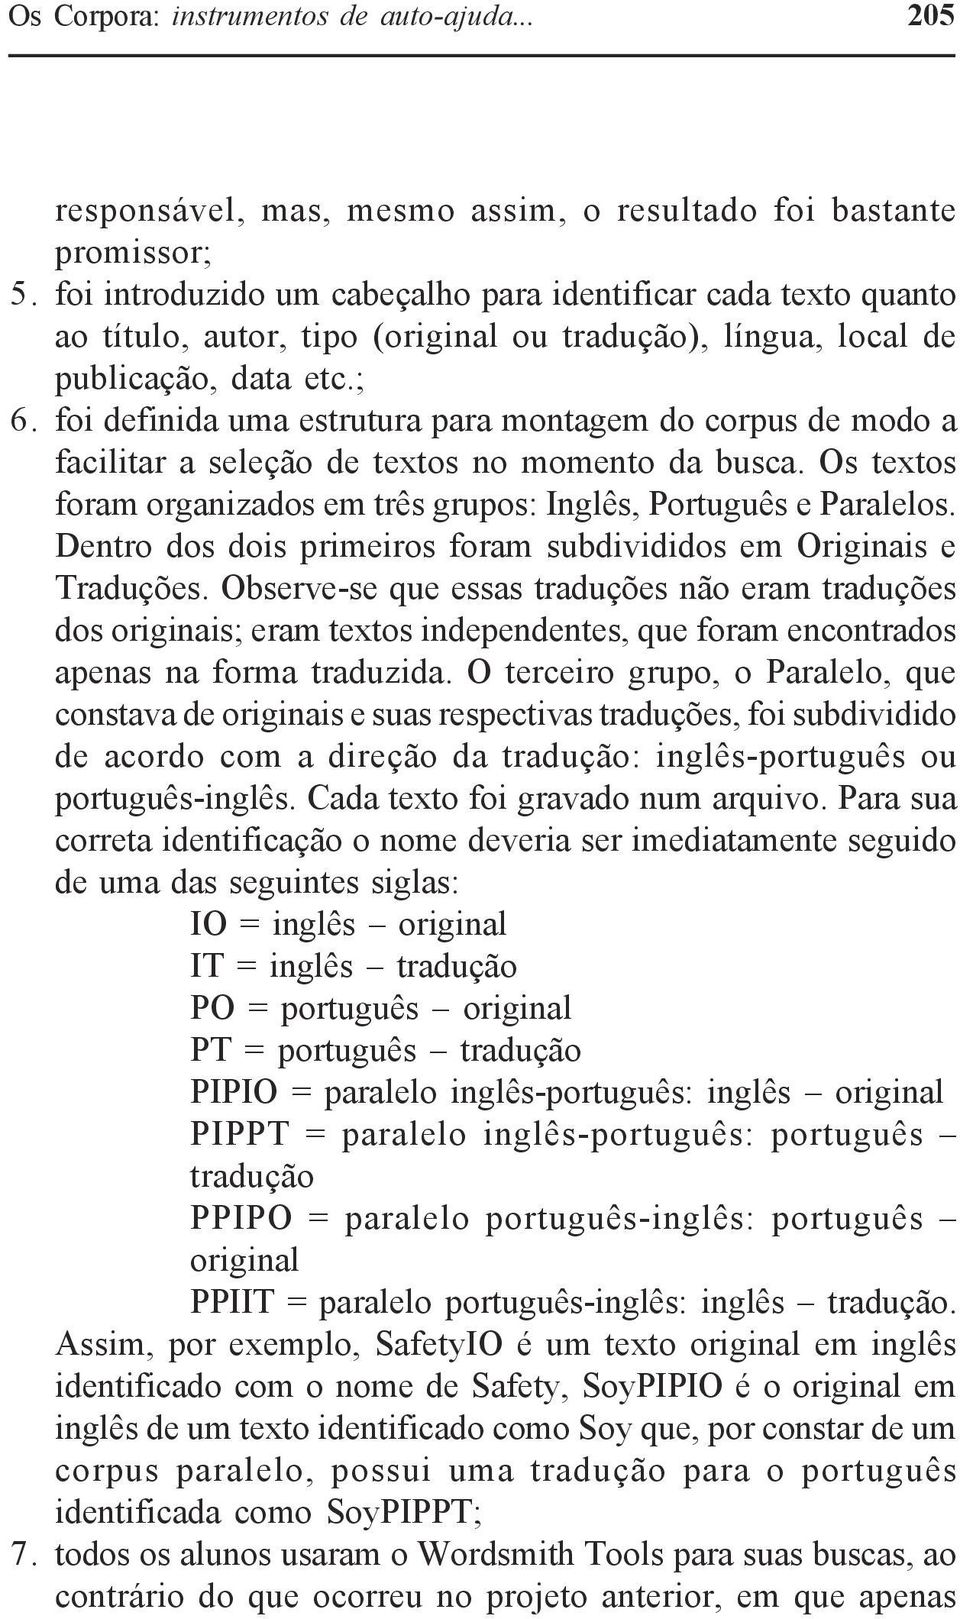 foi definida uma estrutura para montagem do corpus de modo a facilitar a seleção de textos no momento da busca. Os textos foram organizados em três grupos: Inglês, Português e Paralelos.